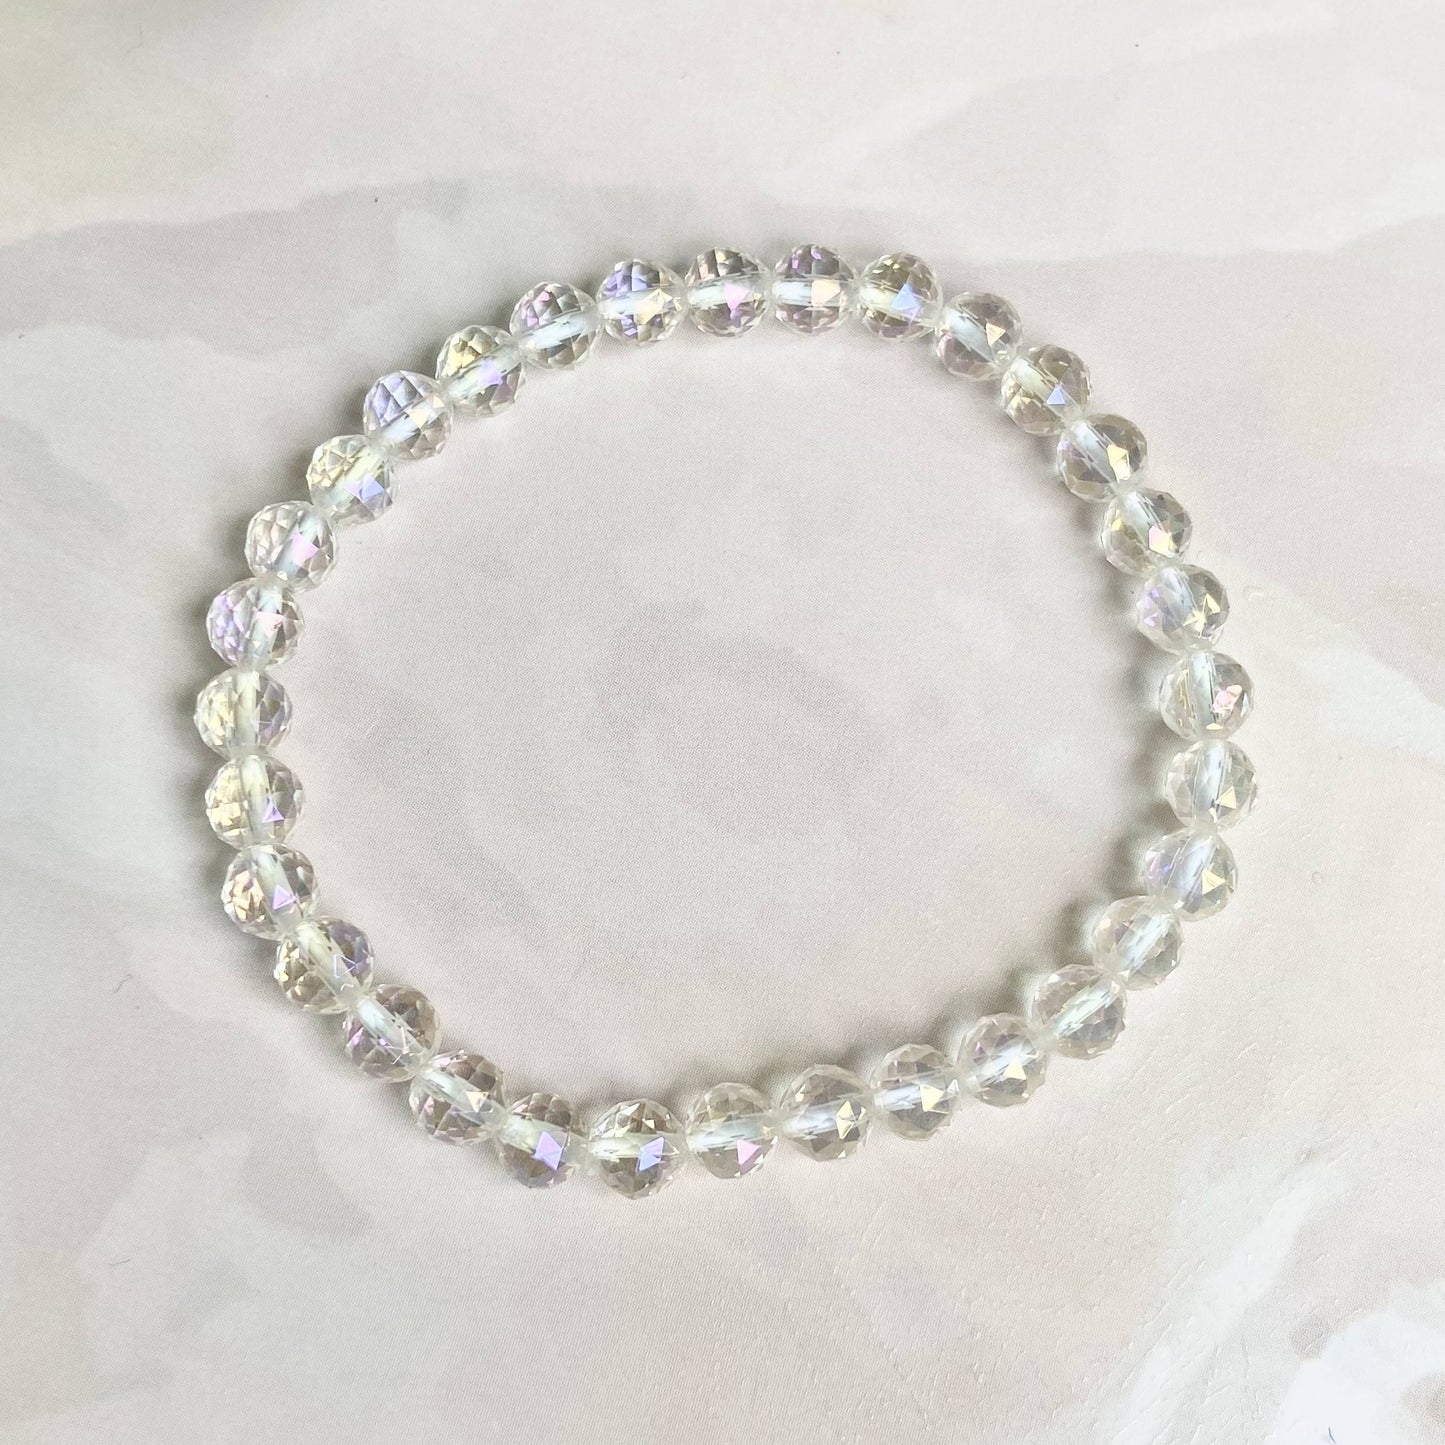 Angel Aura Quartz Multi Facet Bead Bracelet - 6Mm | Peace & Purification Crystal Stones